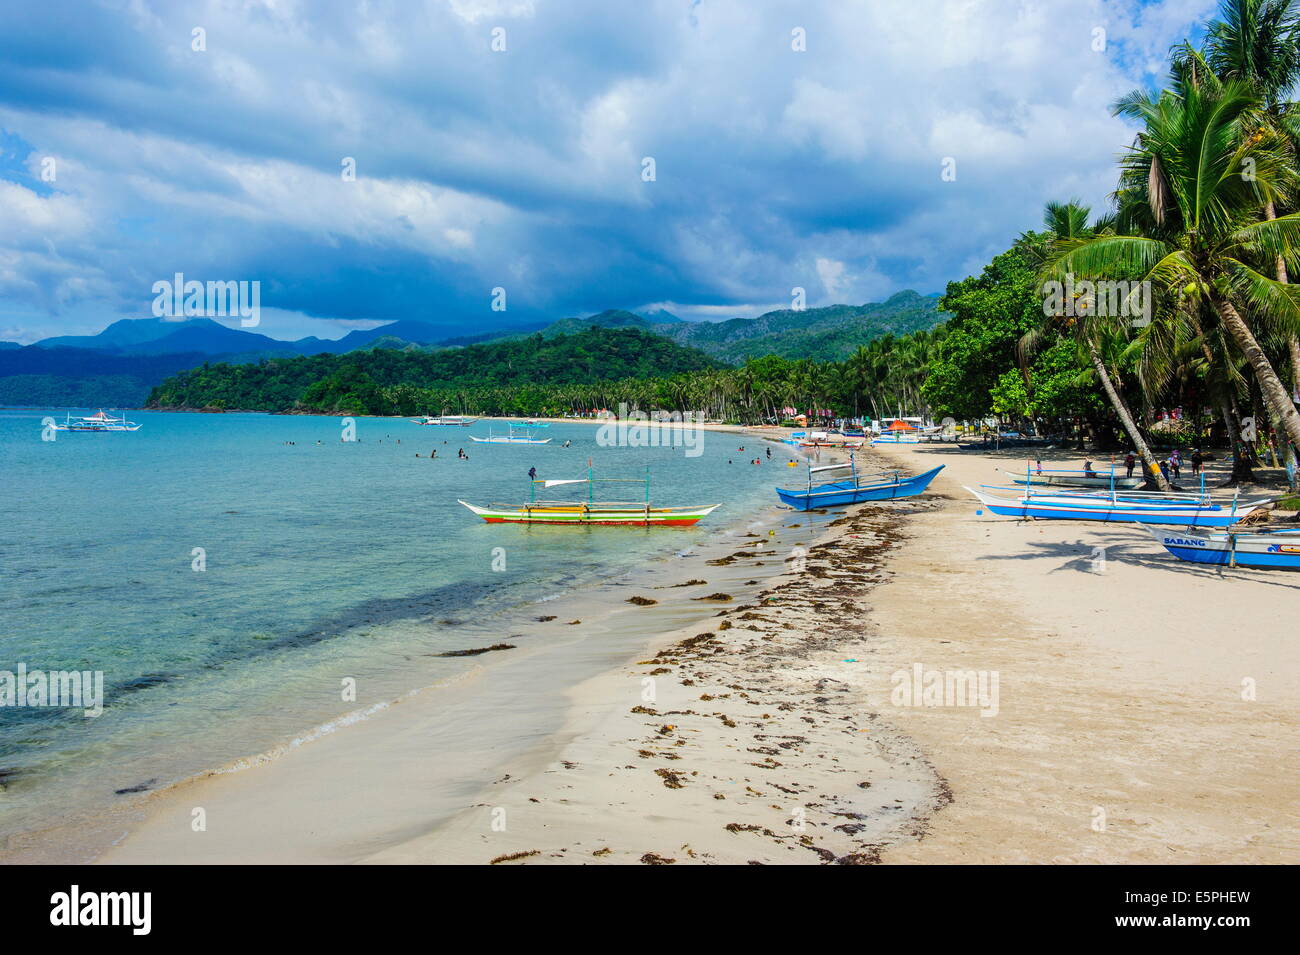 La playa en frente de la nueva maravilla del mundo, el río subterráneo Puerto Princesa, sitio UNESCO, Palawan, Filipinas Foto de stock